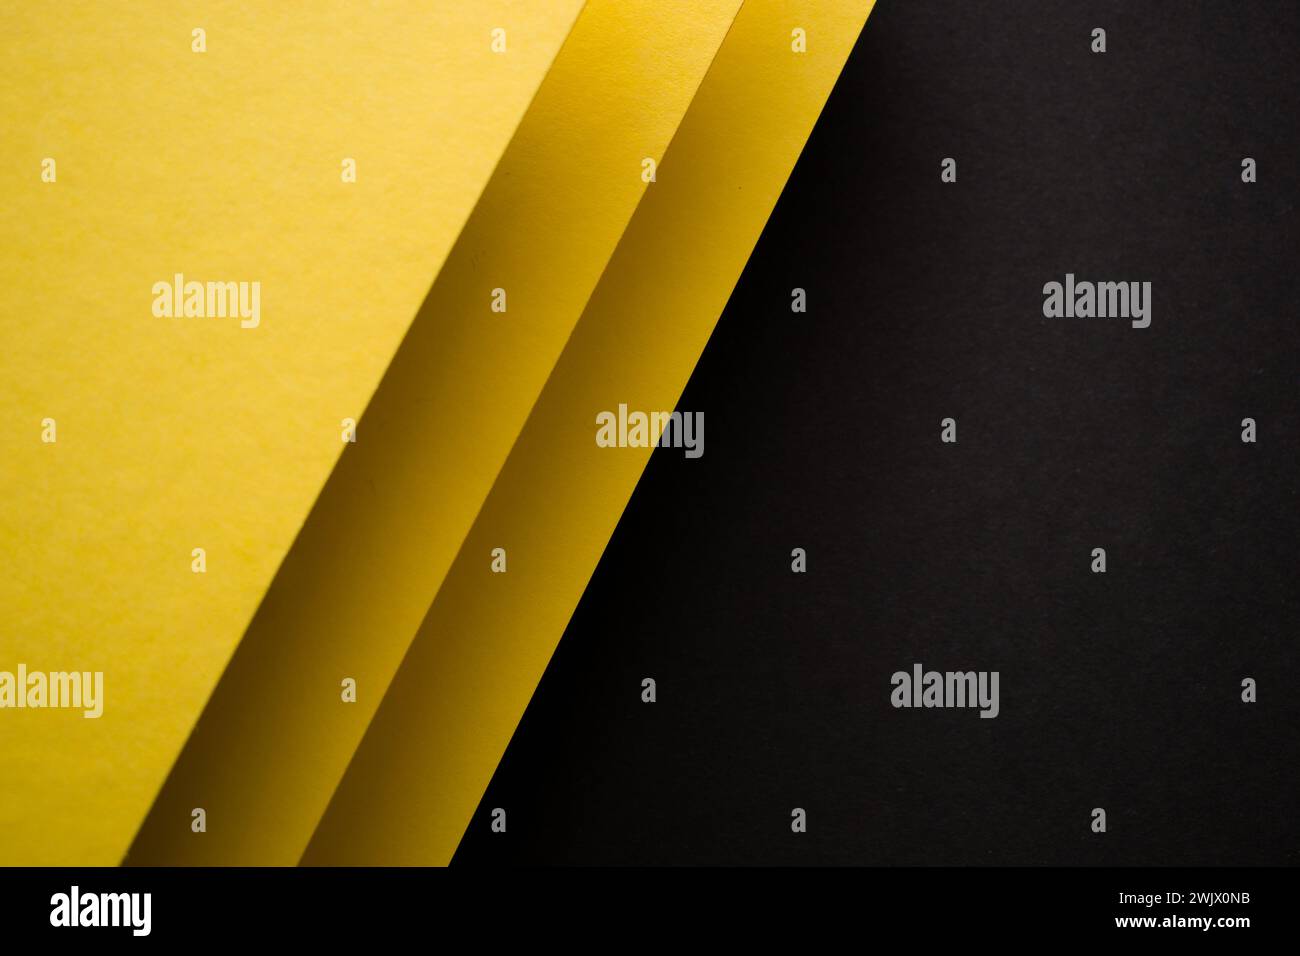 Fond géométrique 3d jaune et noir divisé en diagonale Banque D'Images